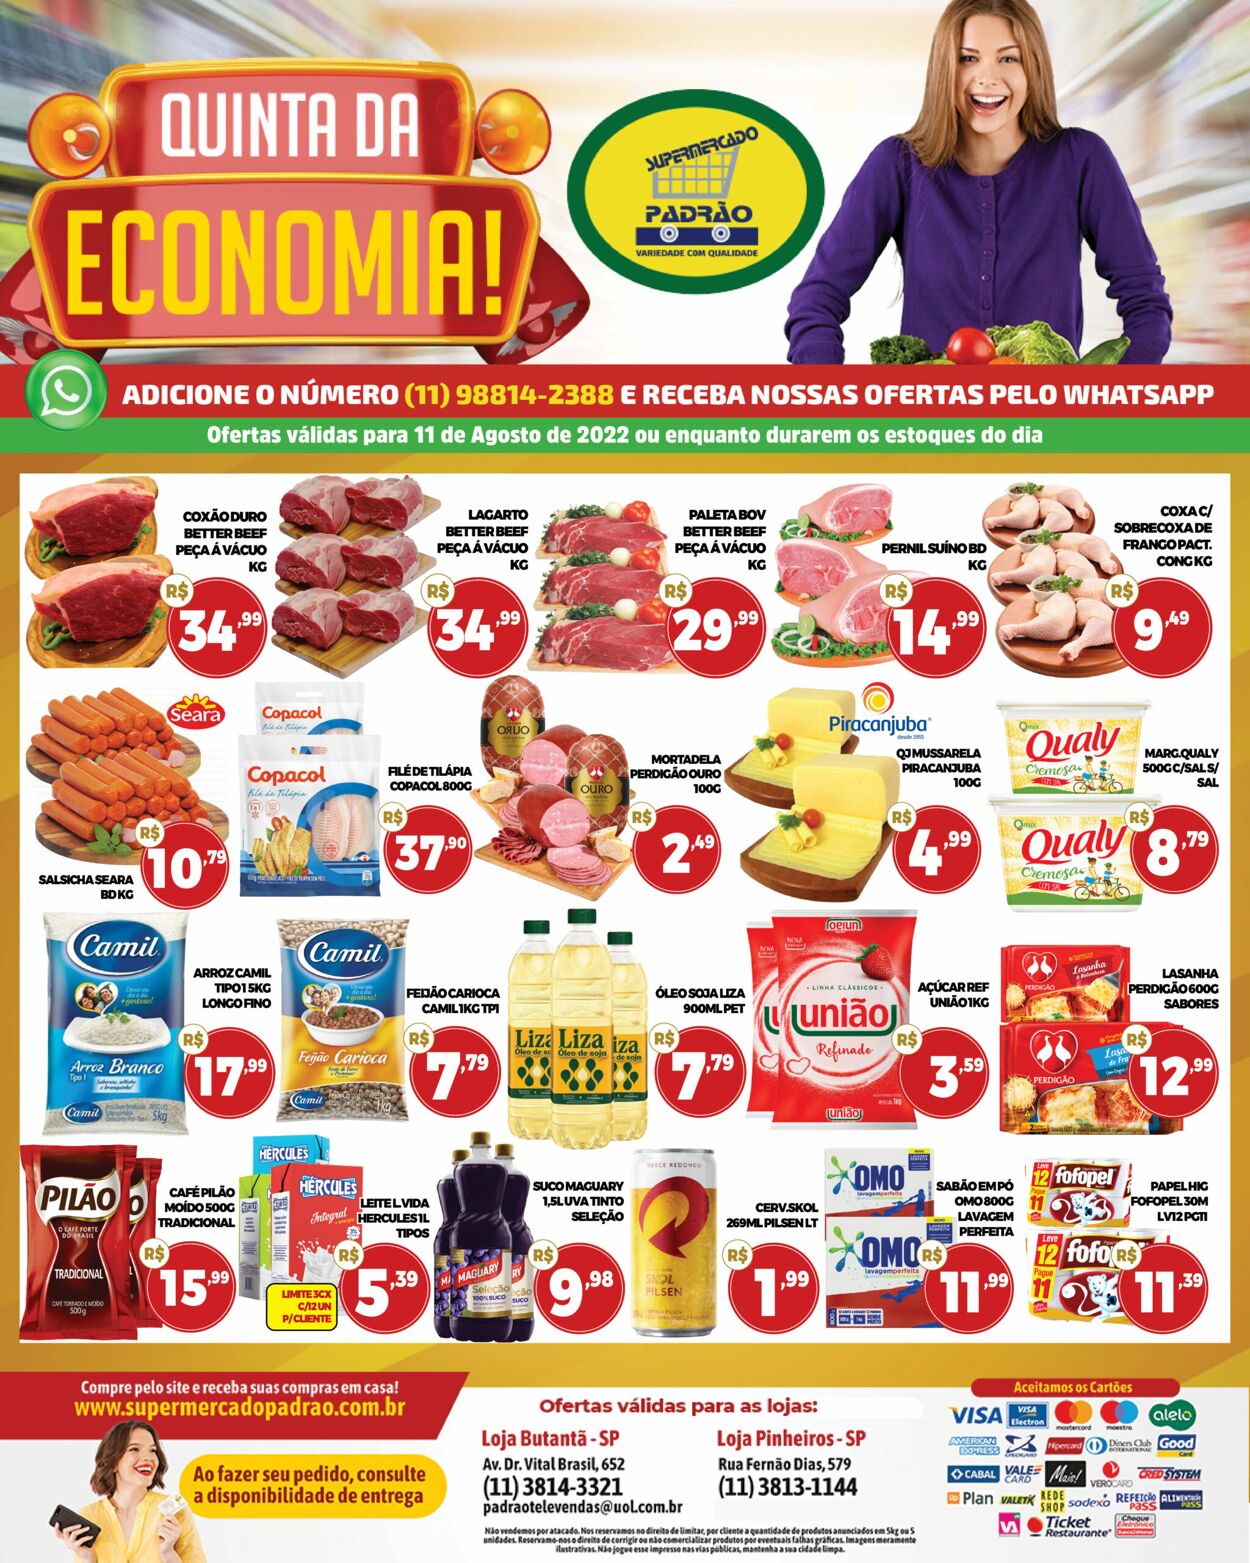 Folheto atual Supermercado Padrão - Válido de 11.08 a 11.08 -  todososfolhetos.com